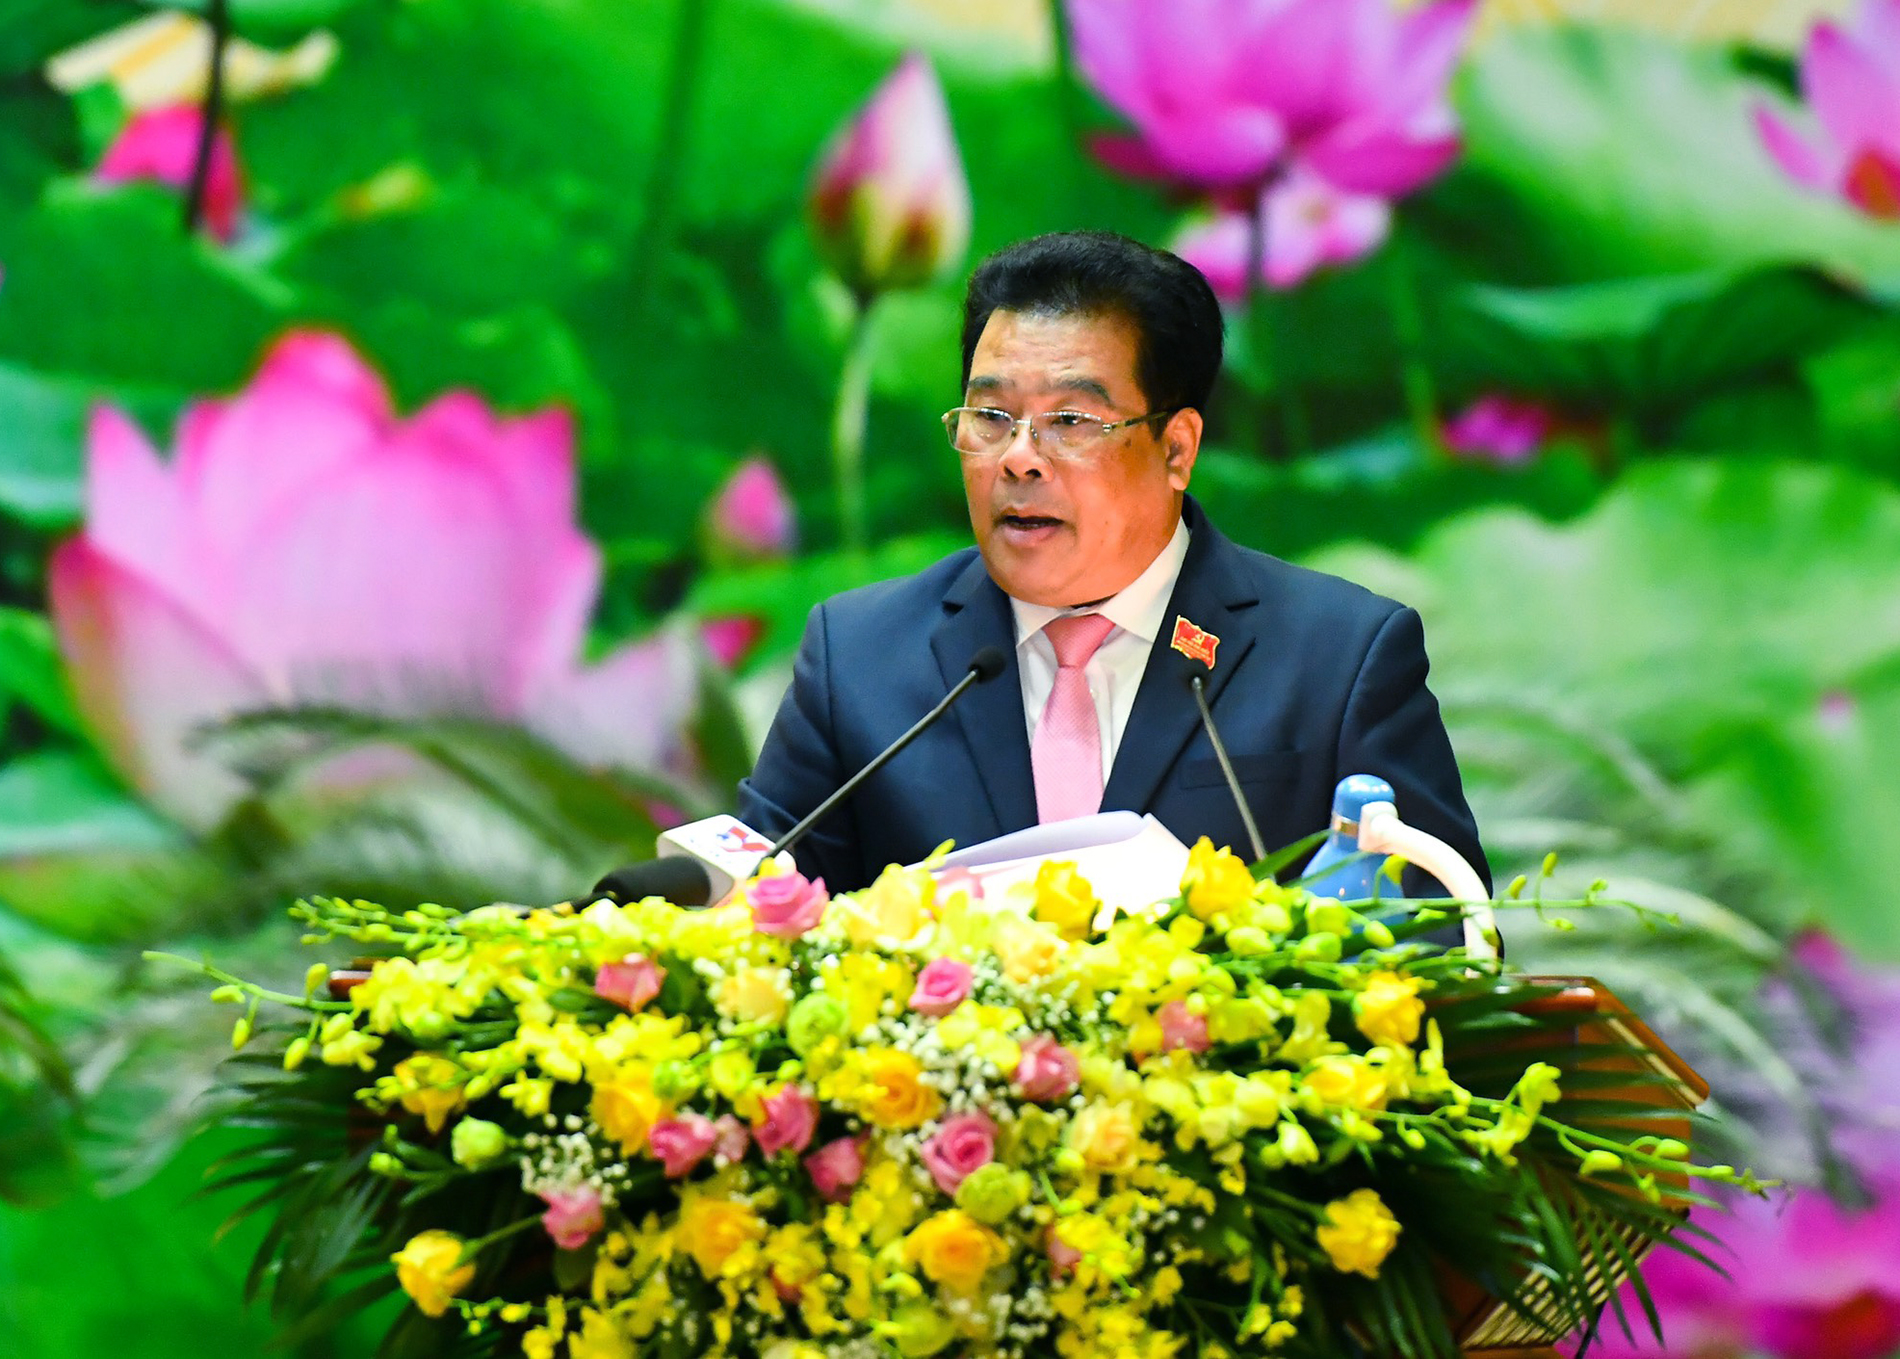 Đồng chí Sơn Minh Thắng, Bí thư Đảng ủy Khối các cơ quan Trung ương nhiệm kỳ 2015-2020 phát biểu khai mạc (Ảnh: VGP)